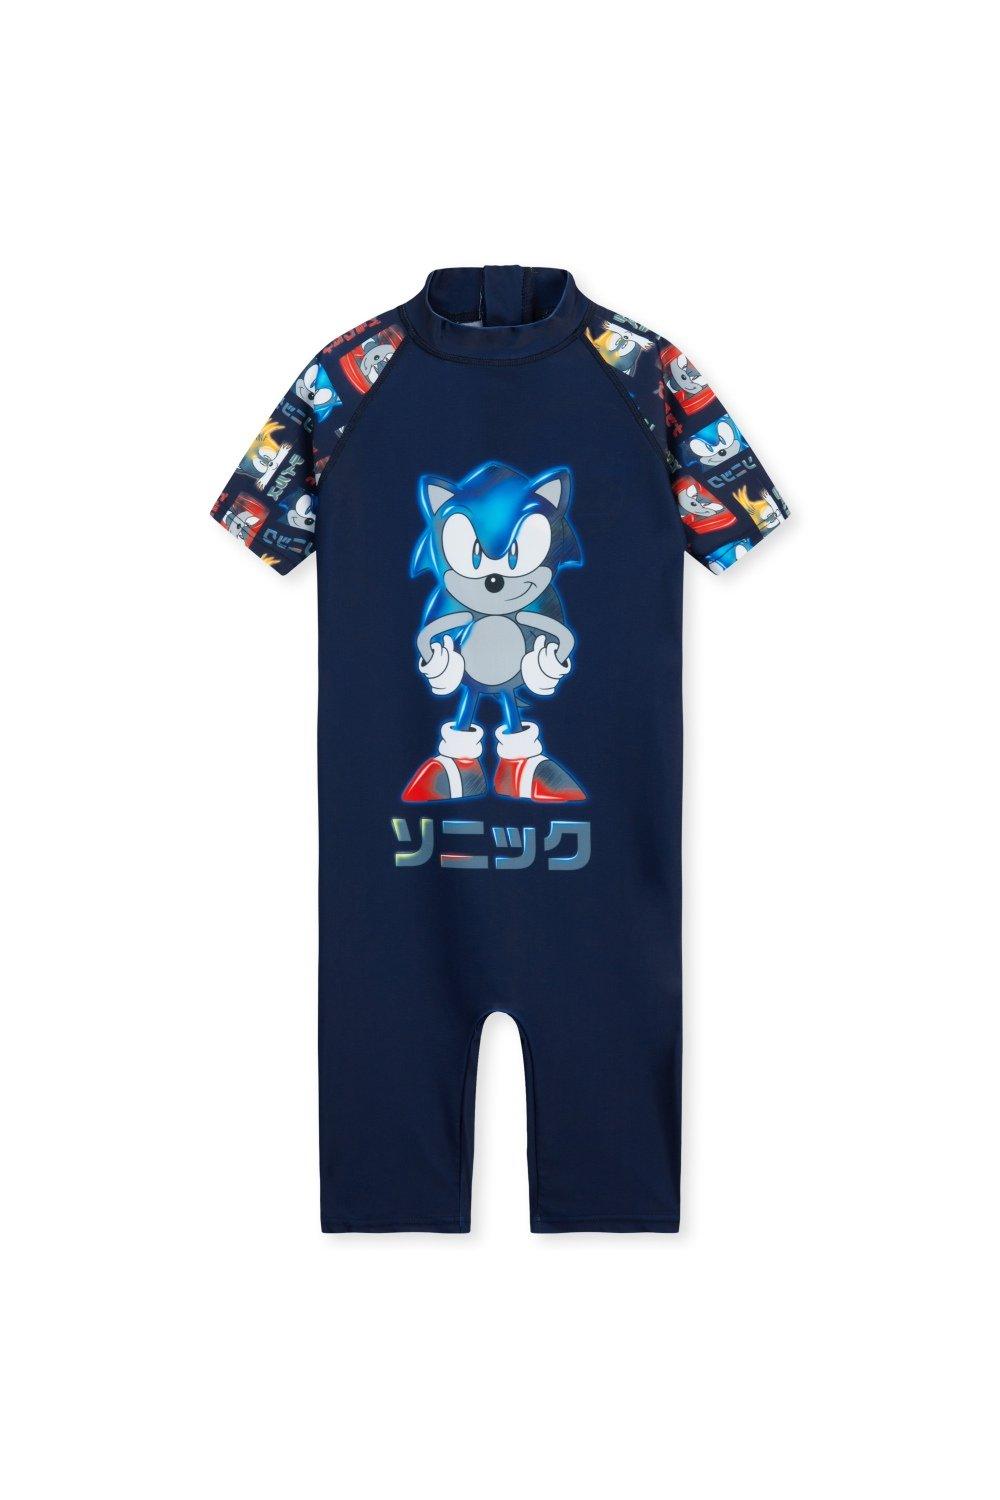 Цельный купальный костюм Купальник Sonic the Hedgehog, мультиколор